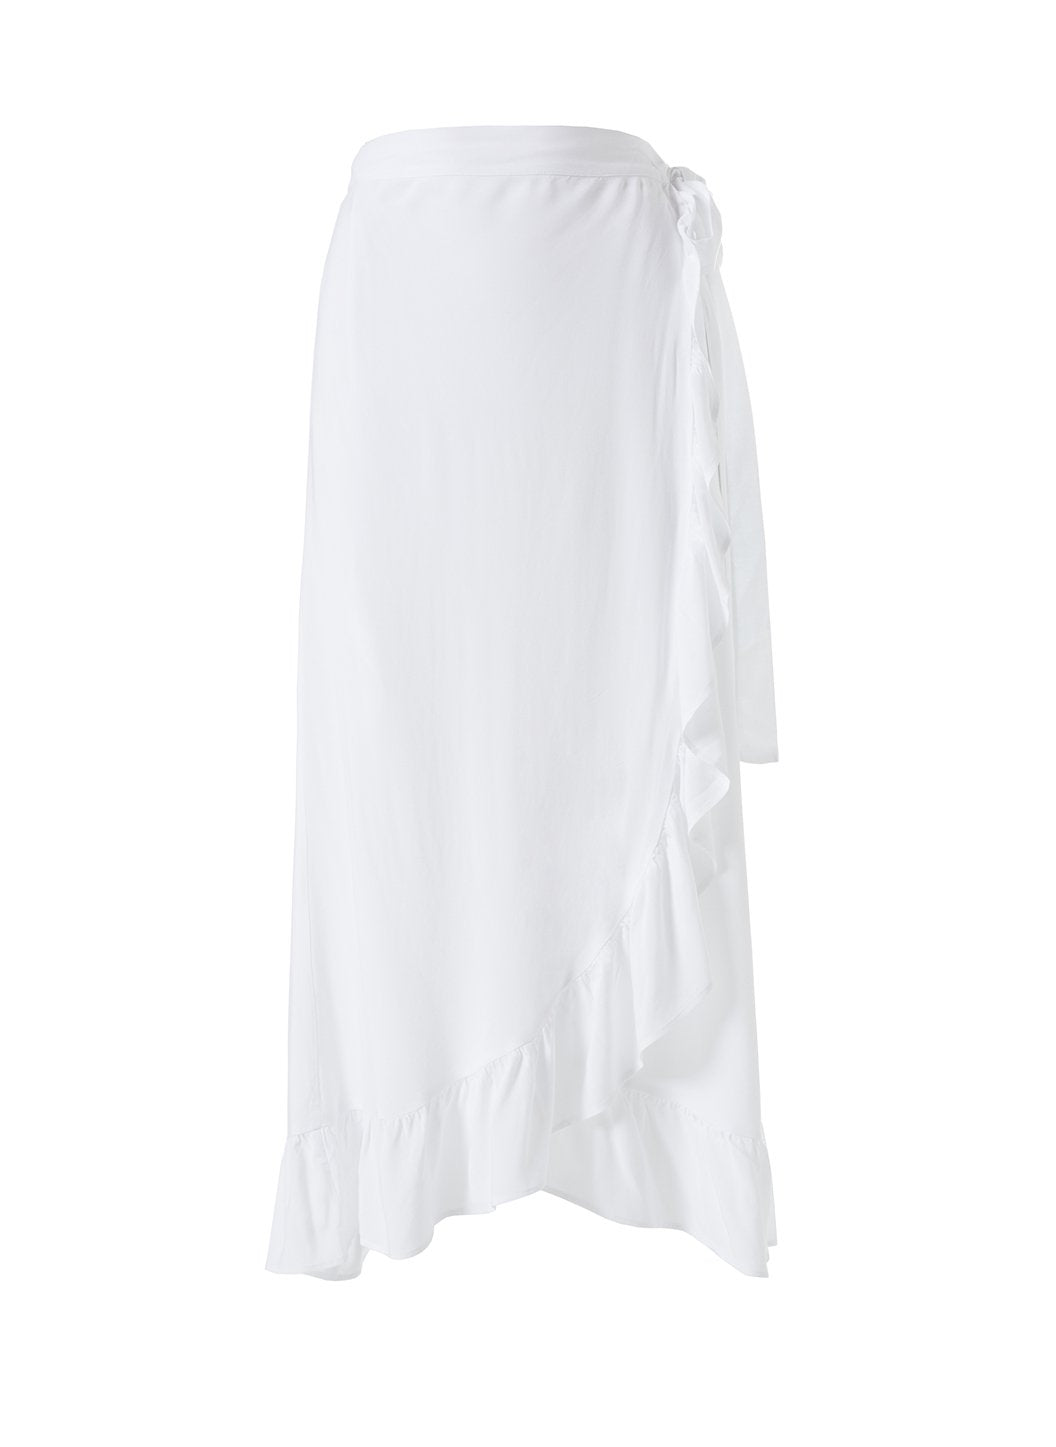 Danni White Skirt